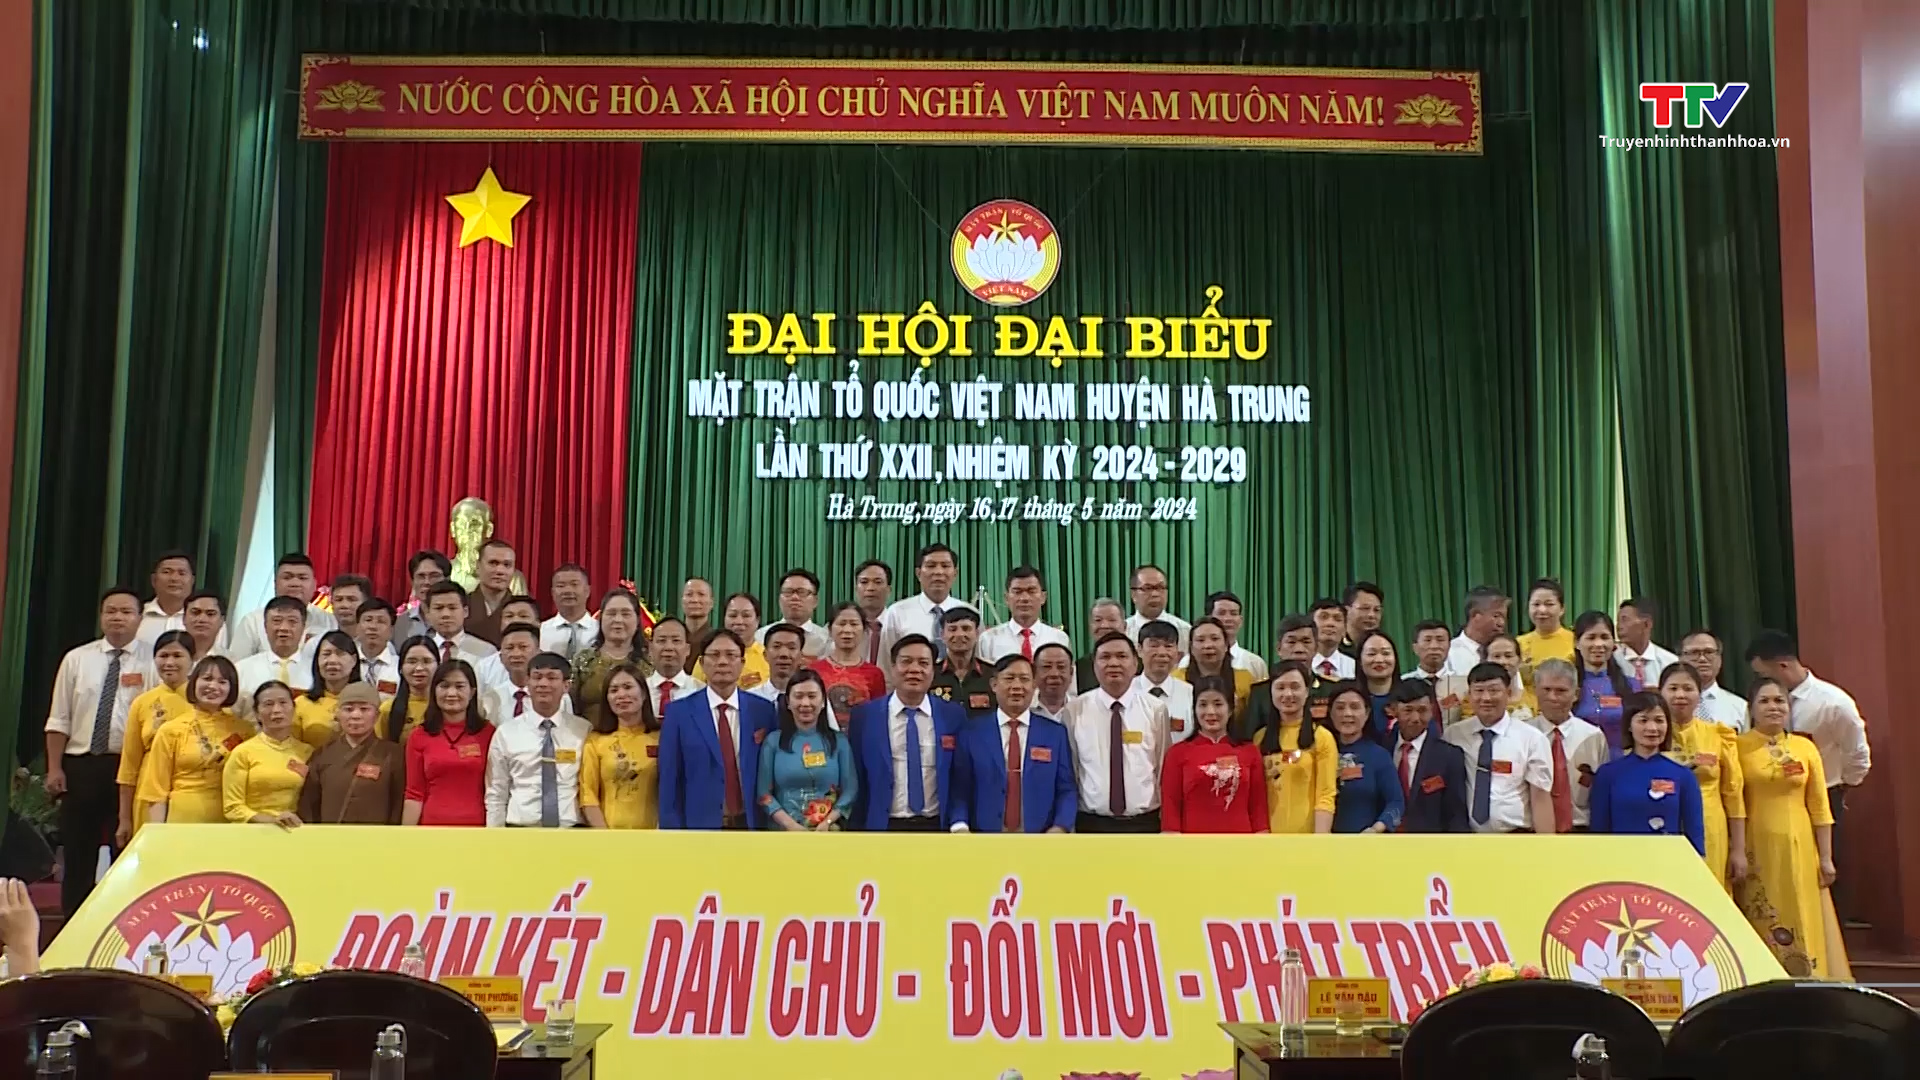 Đại hội đại biểu Mặt trận Tổ quốc Việt Nam huyện Hà Trung lần thứ XXII, nhiệm kỳ 2024 - 2029- Ảnh 1.